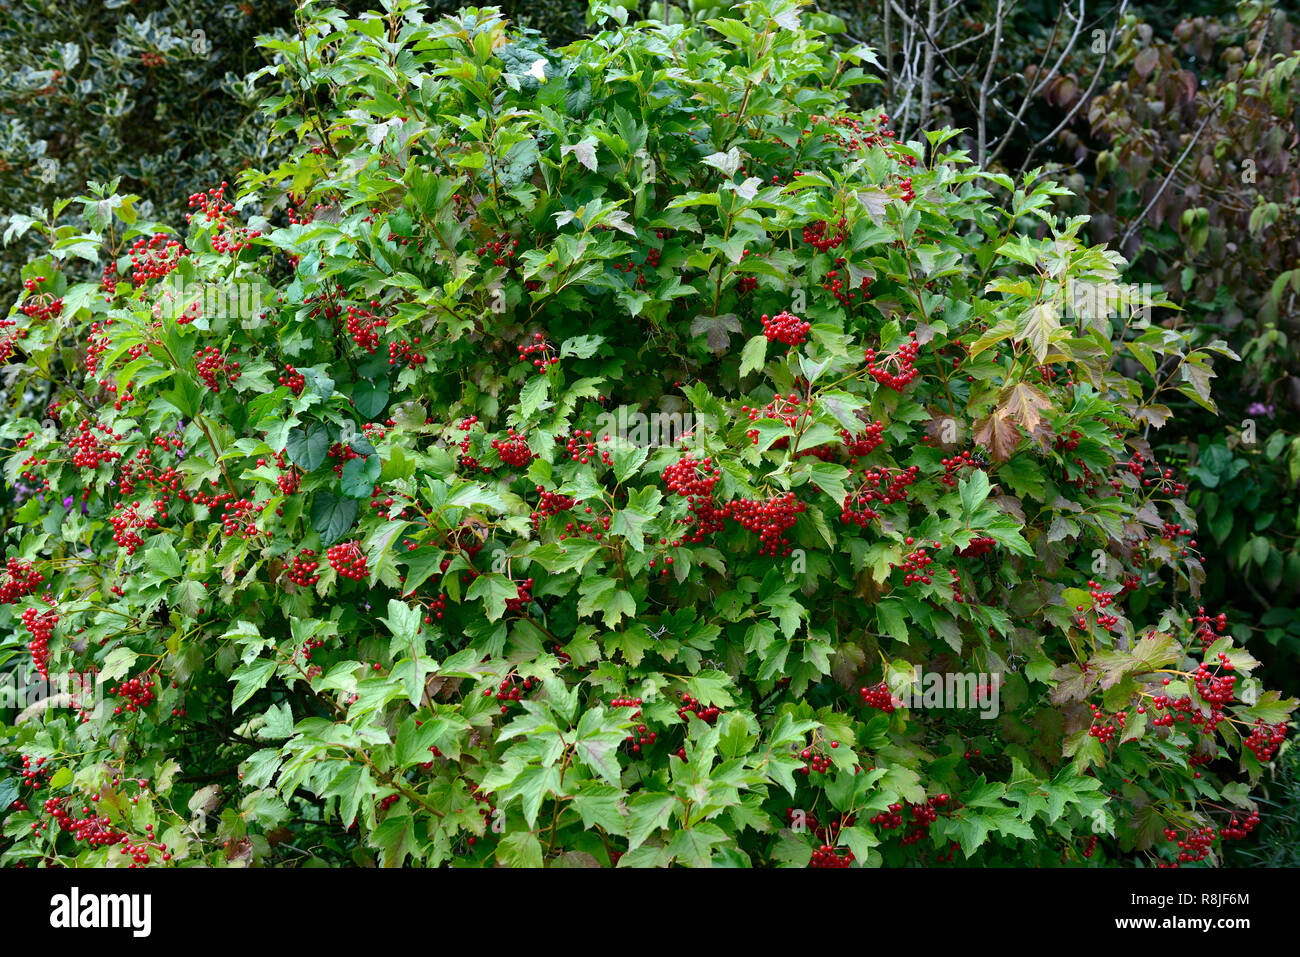 Viburnum opulus compactum,bacche rosse,Viburno Rose,autunno,autumnal,caduta,berry,,a bacca frutto,frutta,arbusto,arbusti,RM Floral Foto Stock